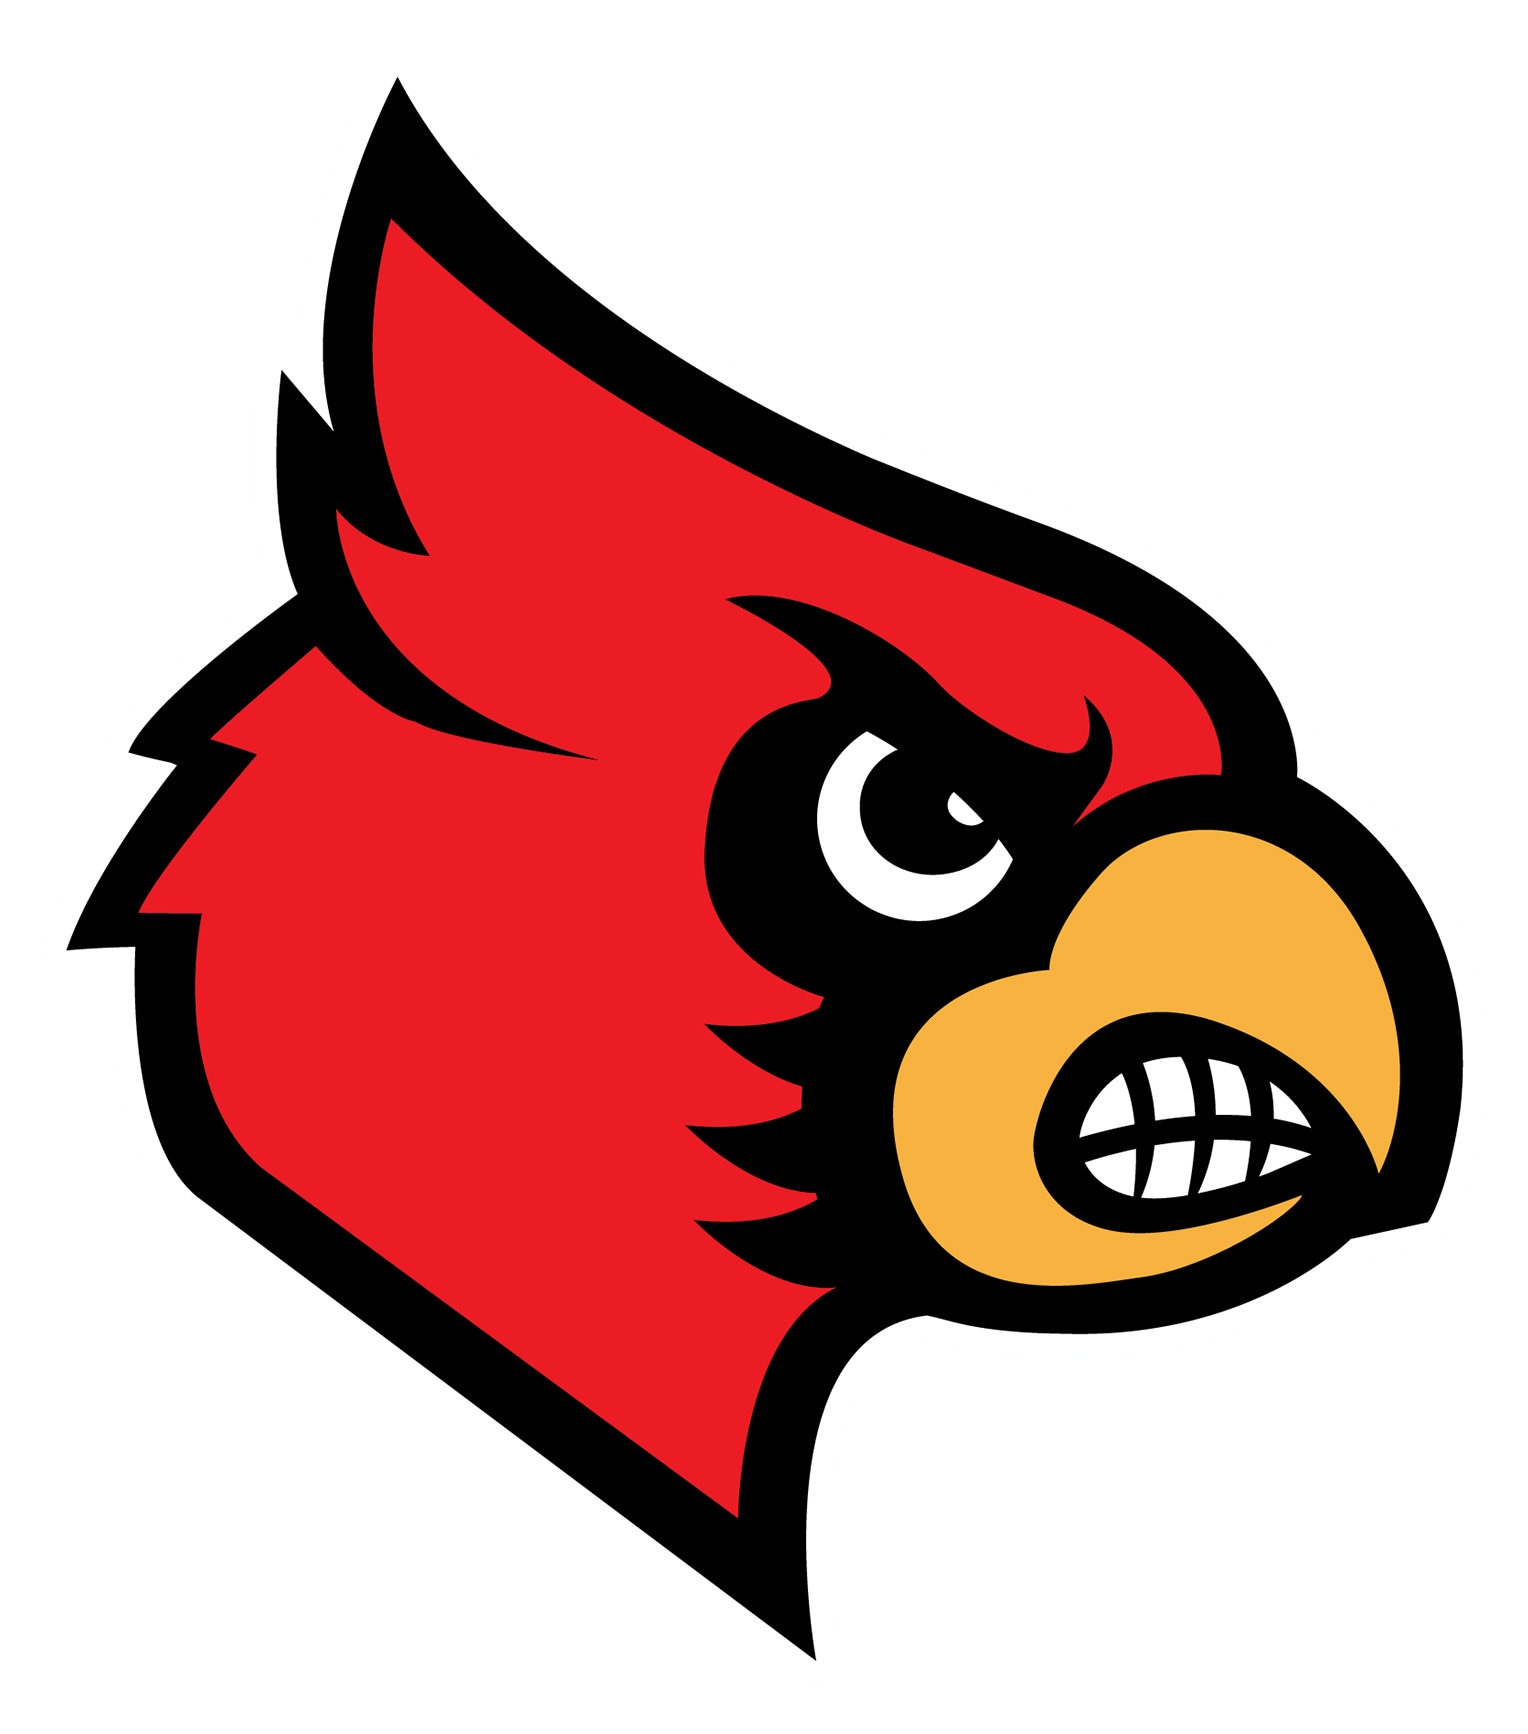 Louisville Cardinals - Mesh Statement Watch - Black Band